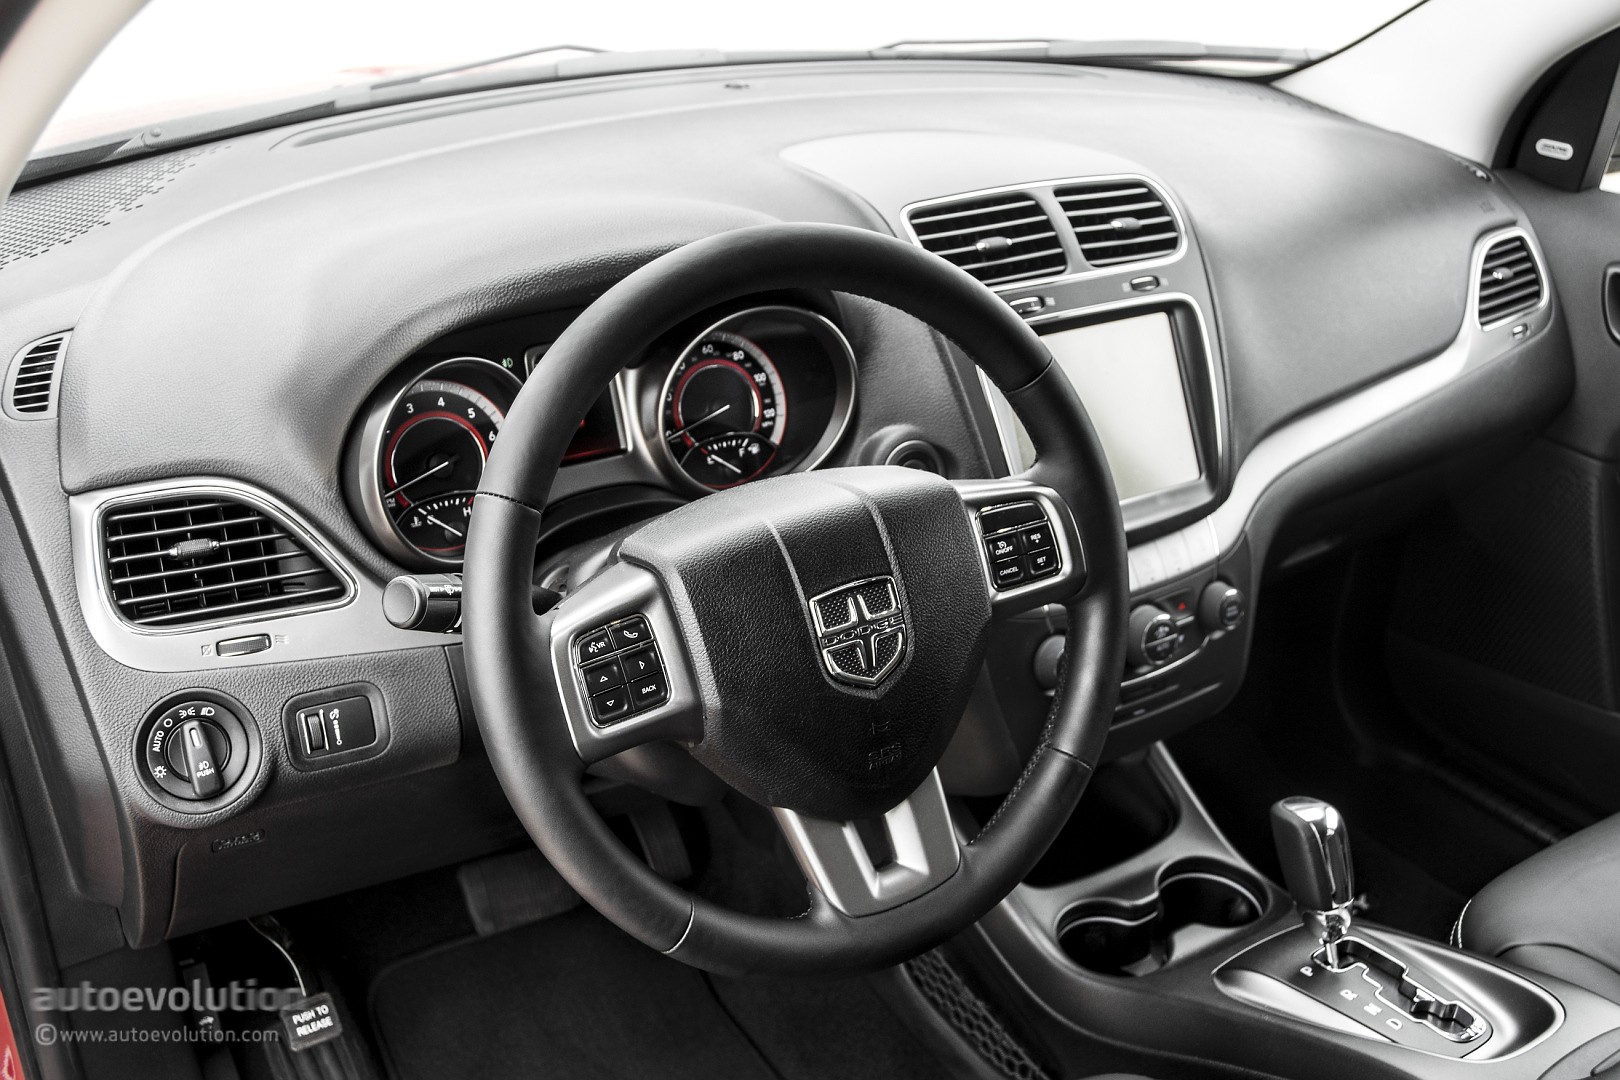 2015 Dodge Journey Review - autoevolution